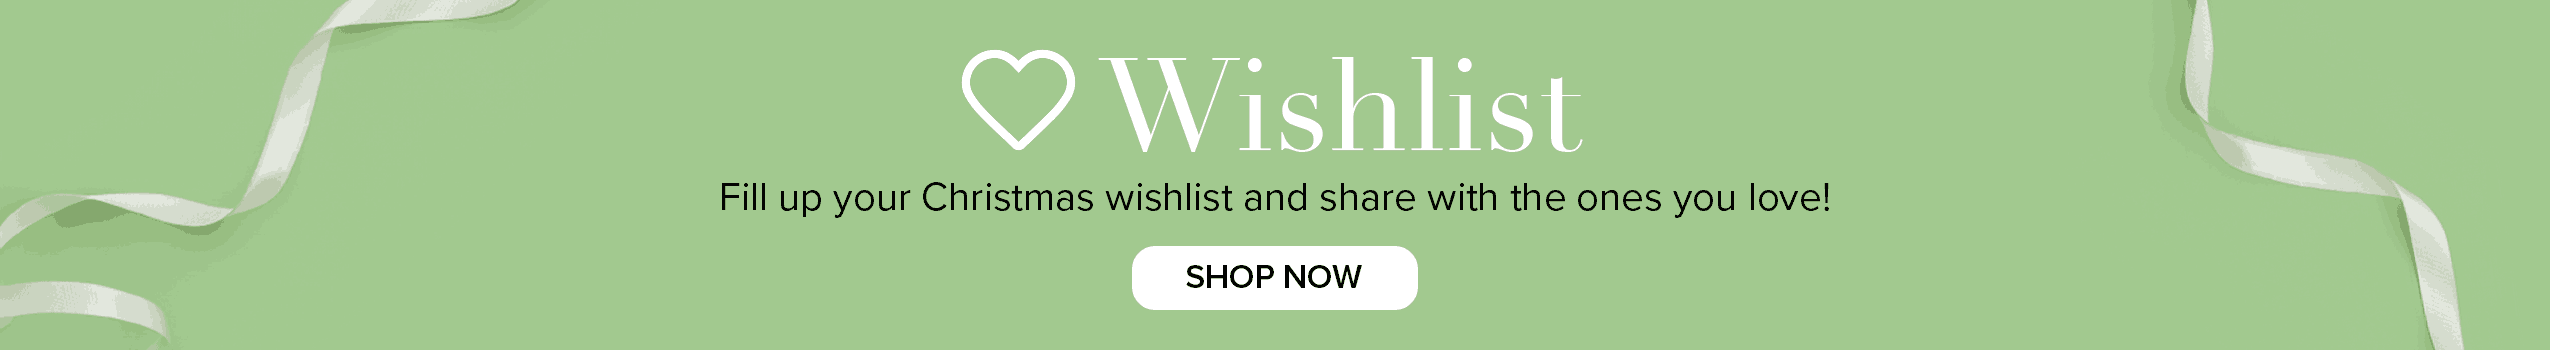 Wishlist Banner